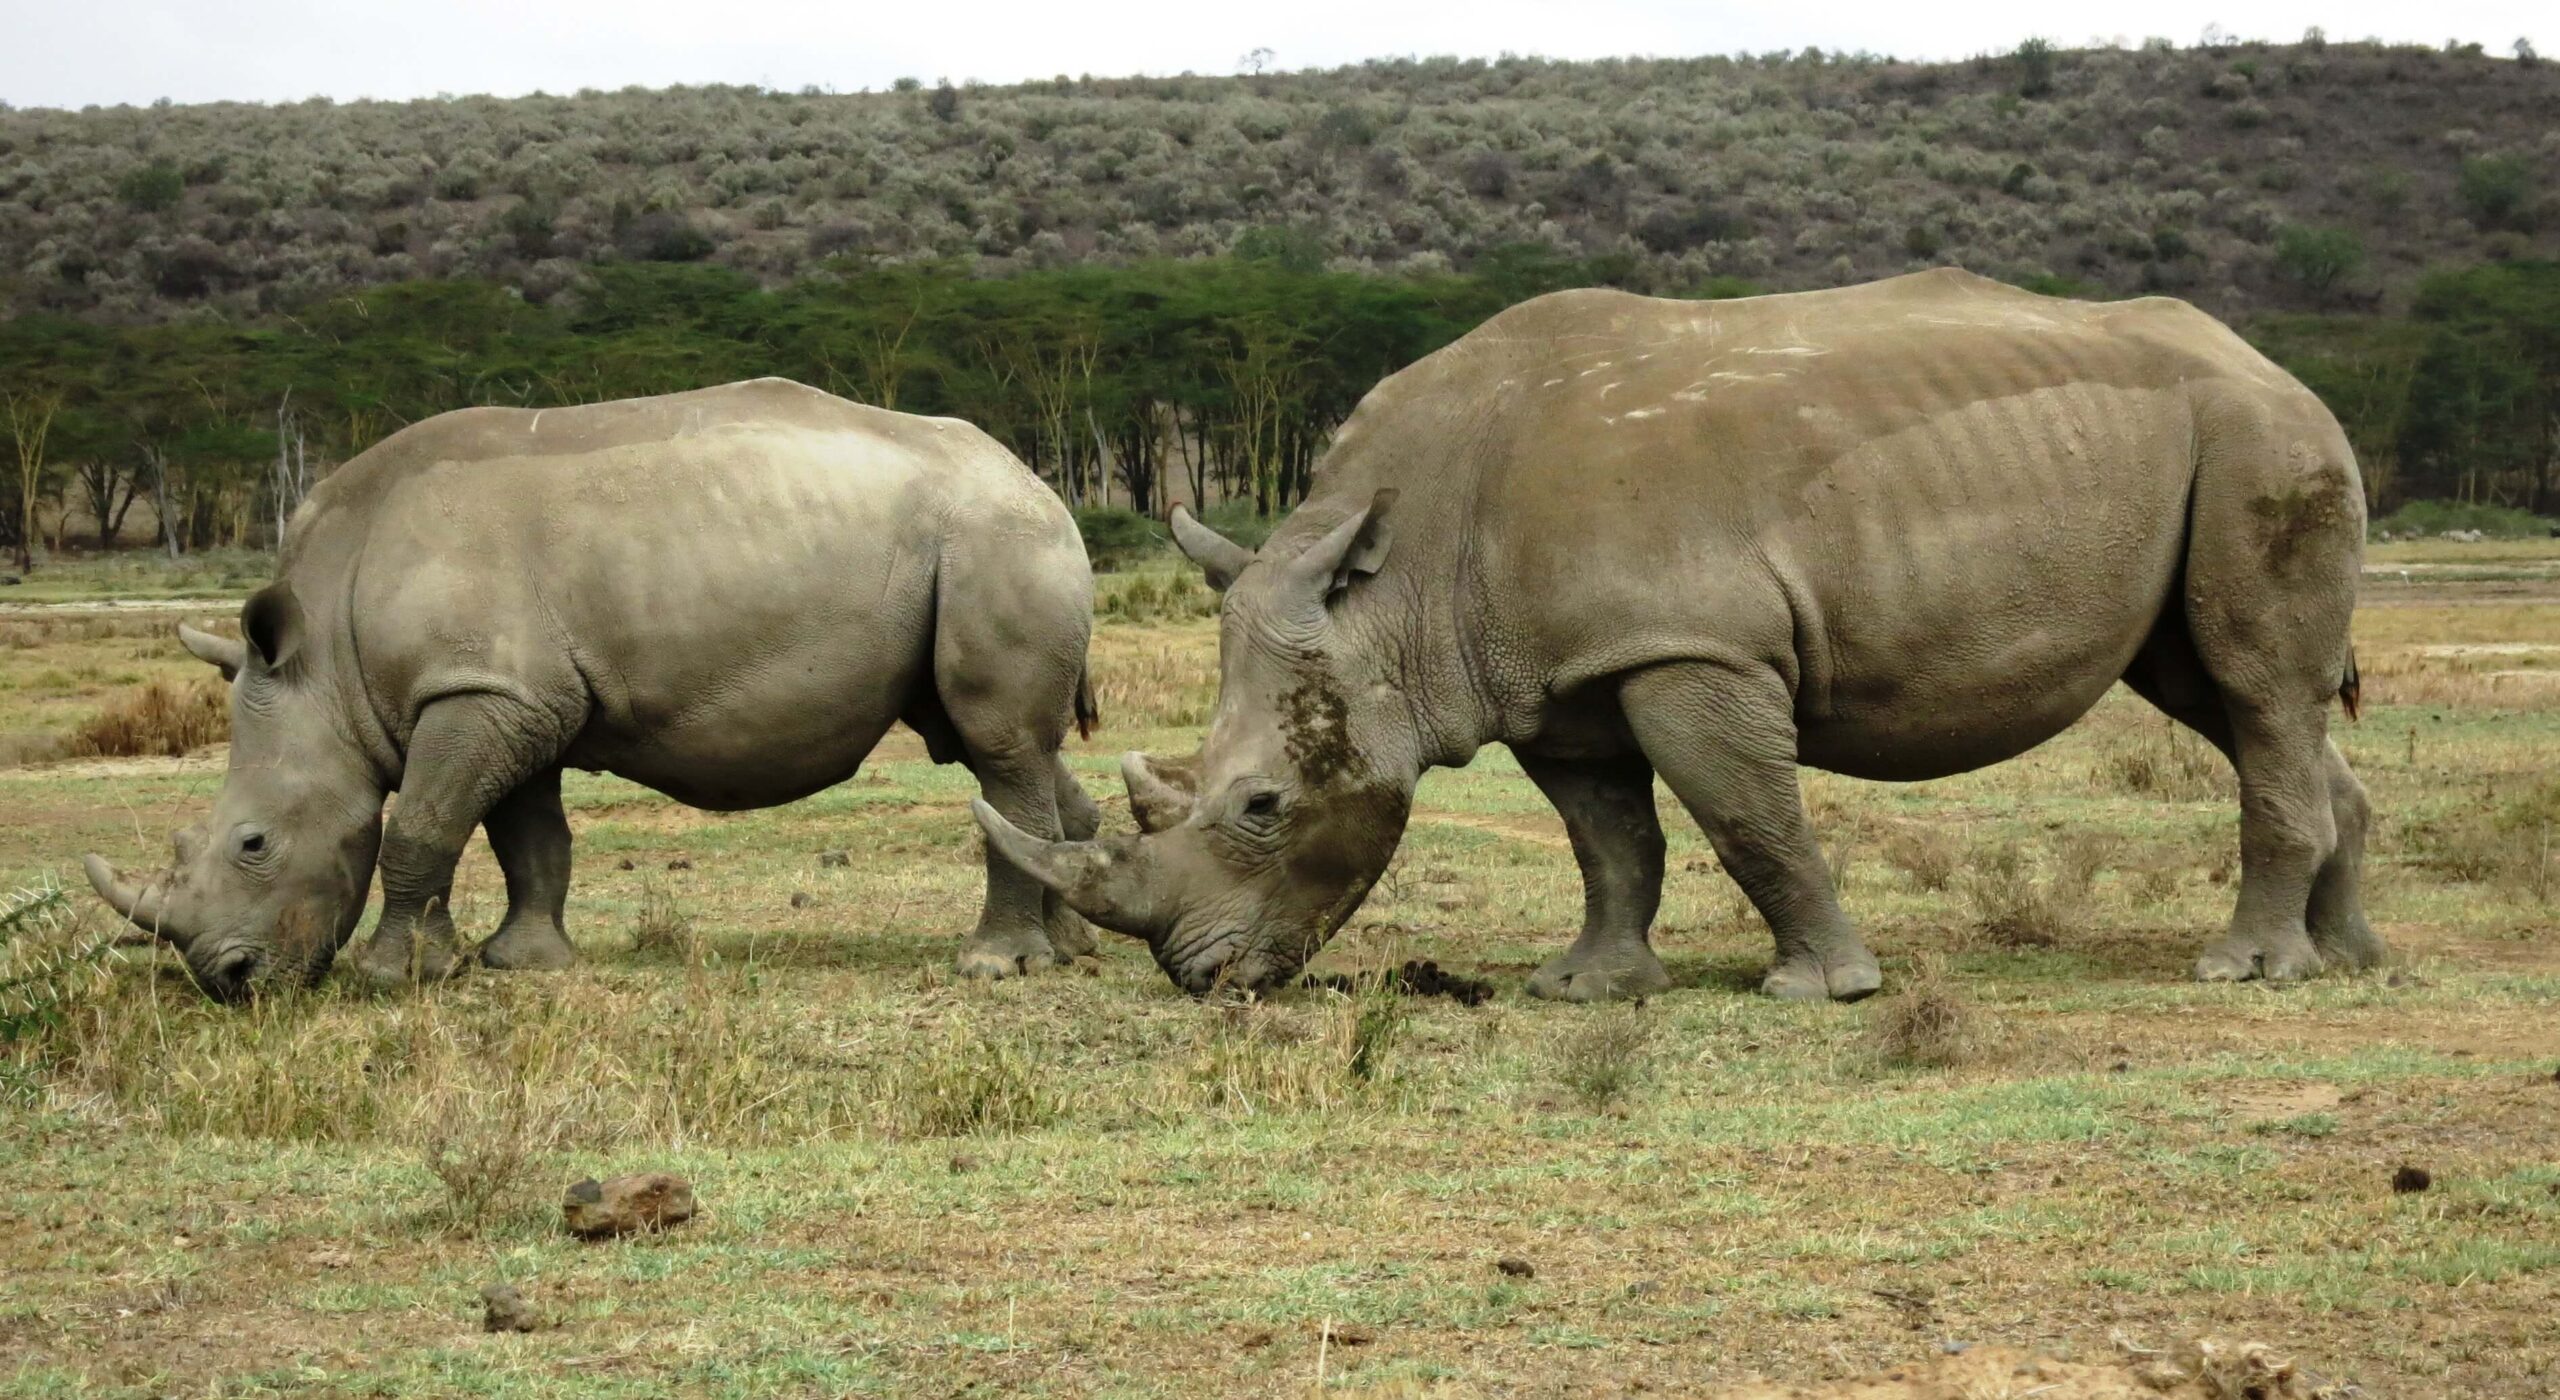 The Kenya safaris